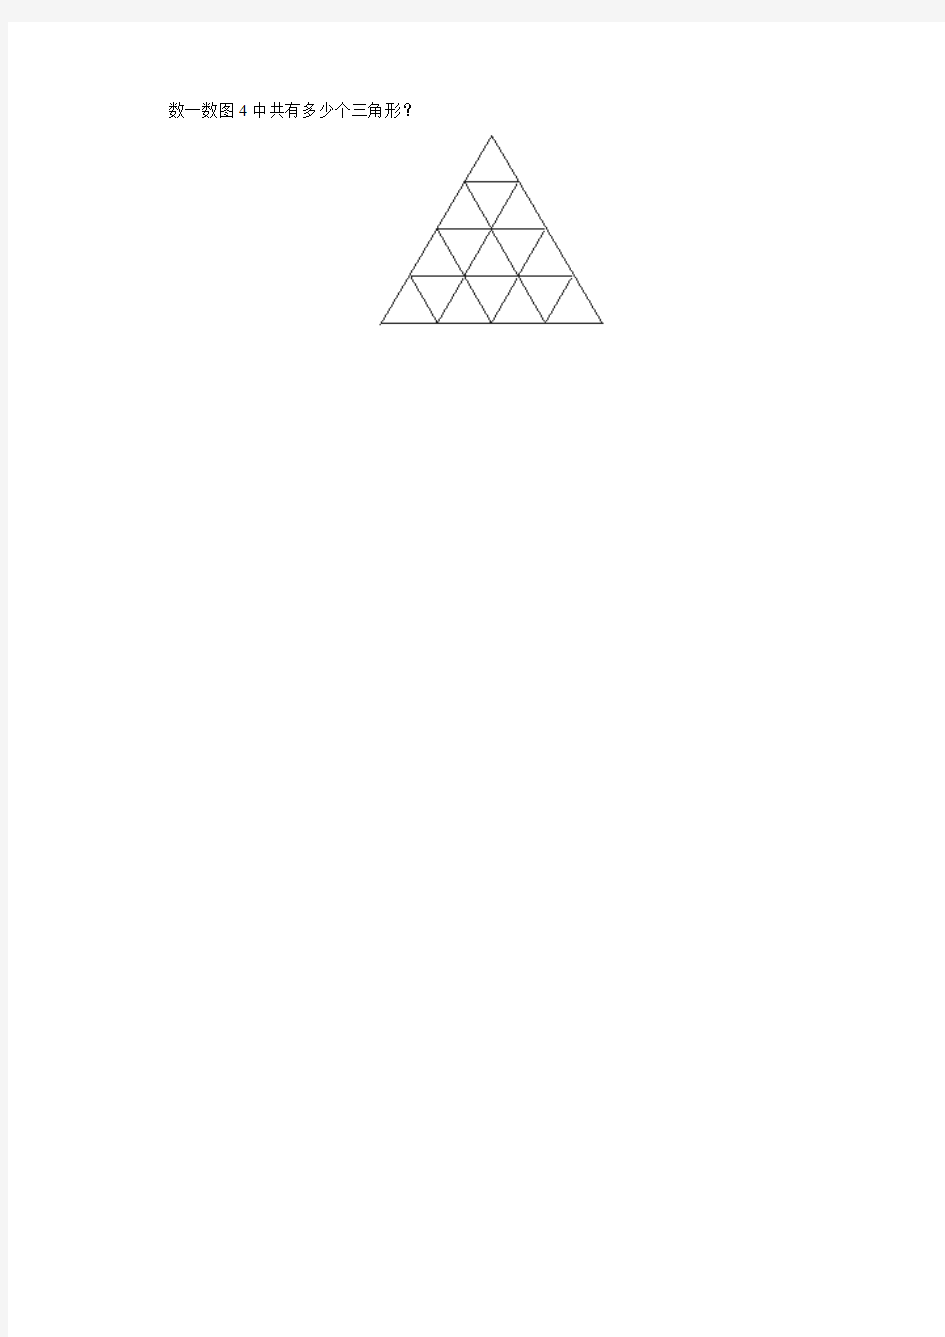 数一数图4中共有多少个三角形